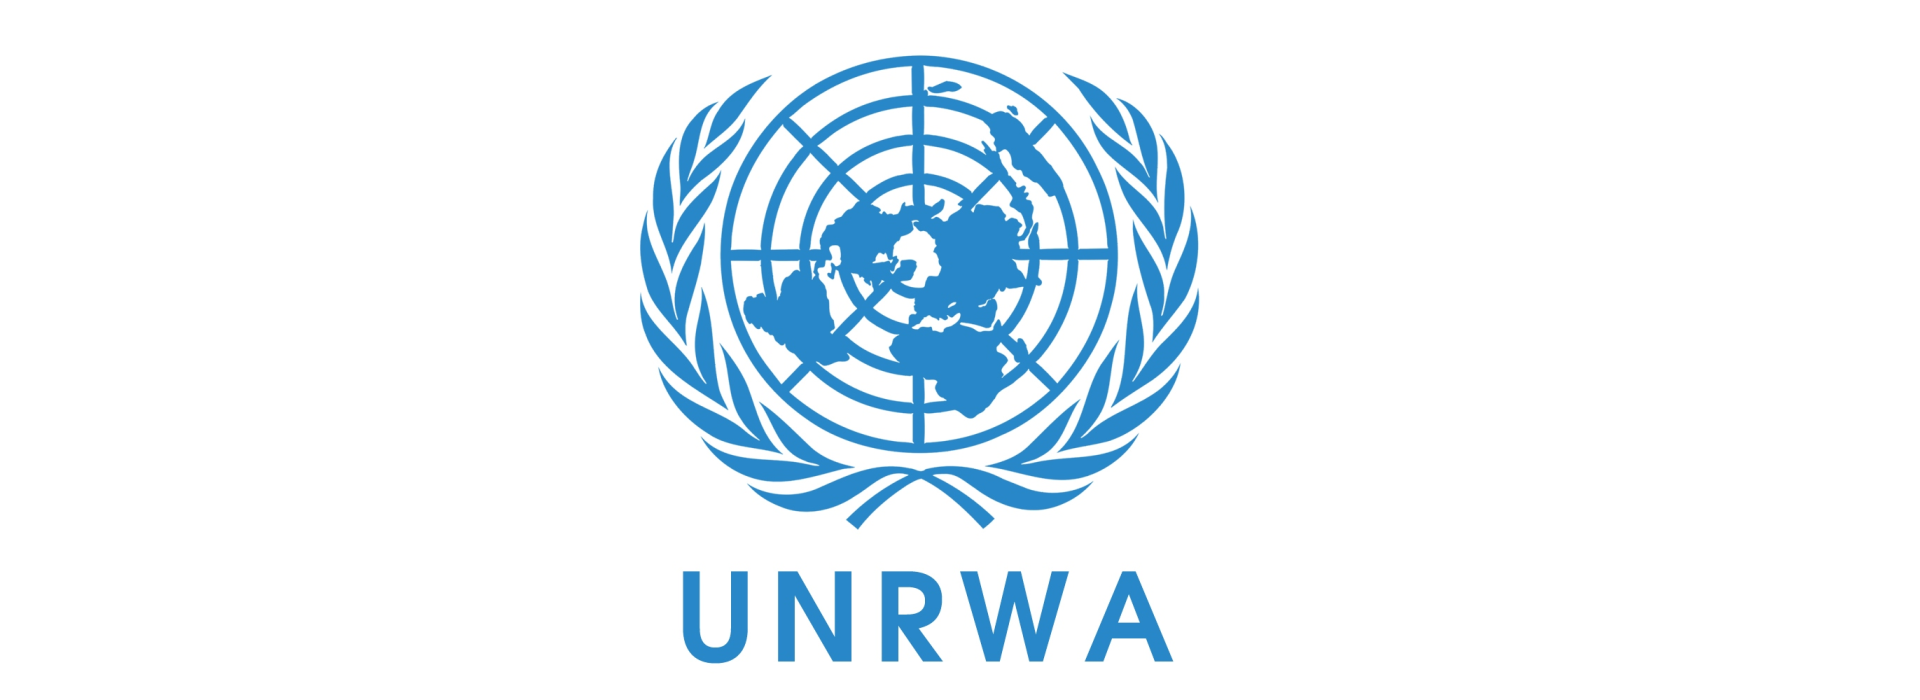 Yaponiya UNRWA-ya maliyyə yardımını bərpa edəcək